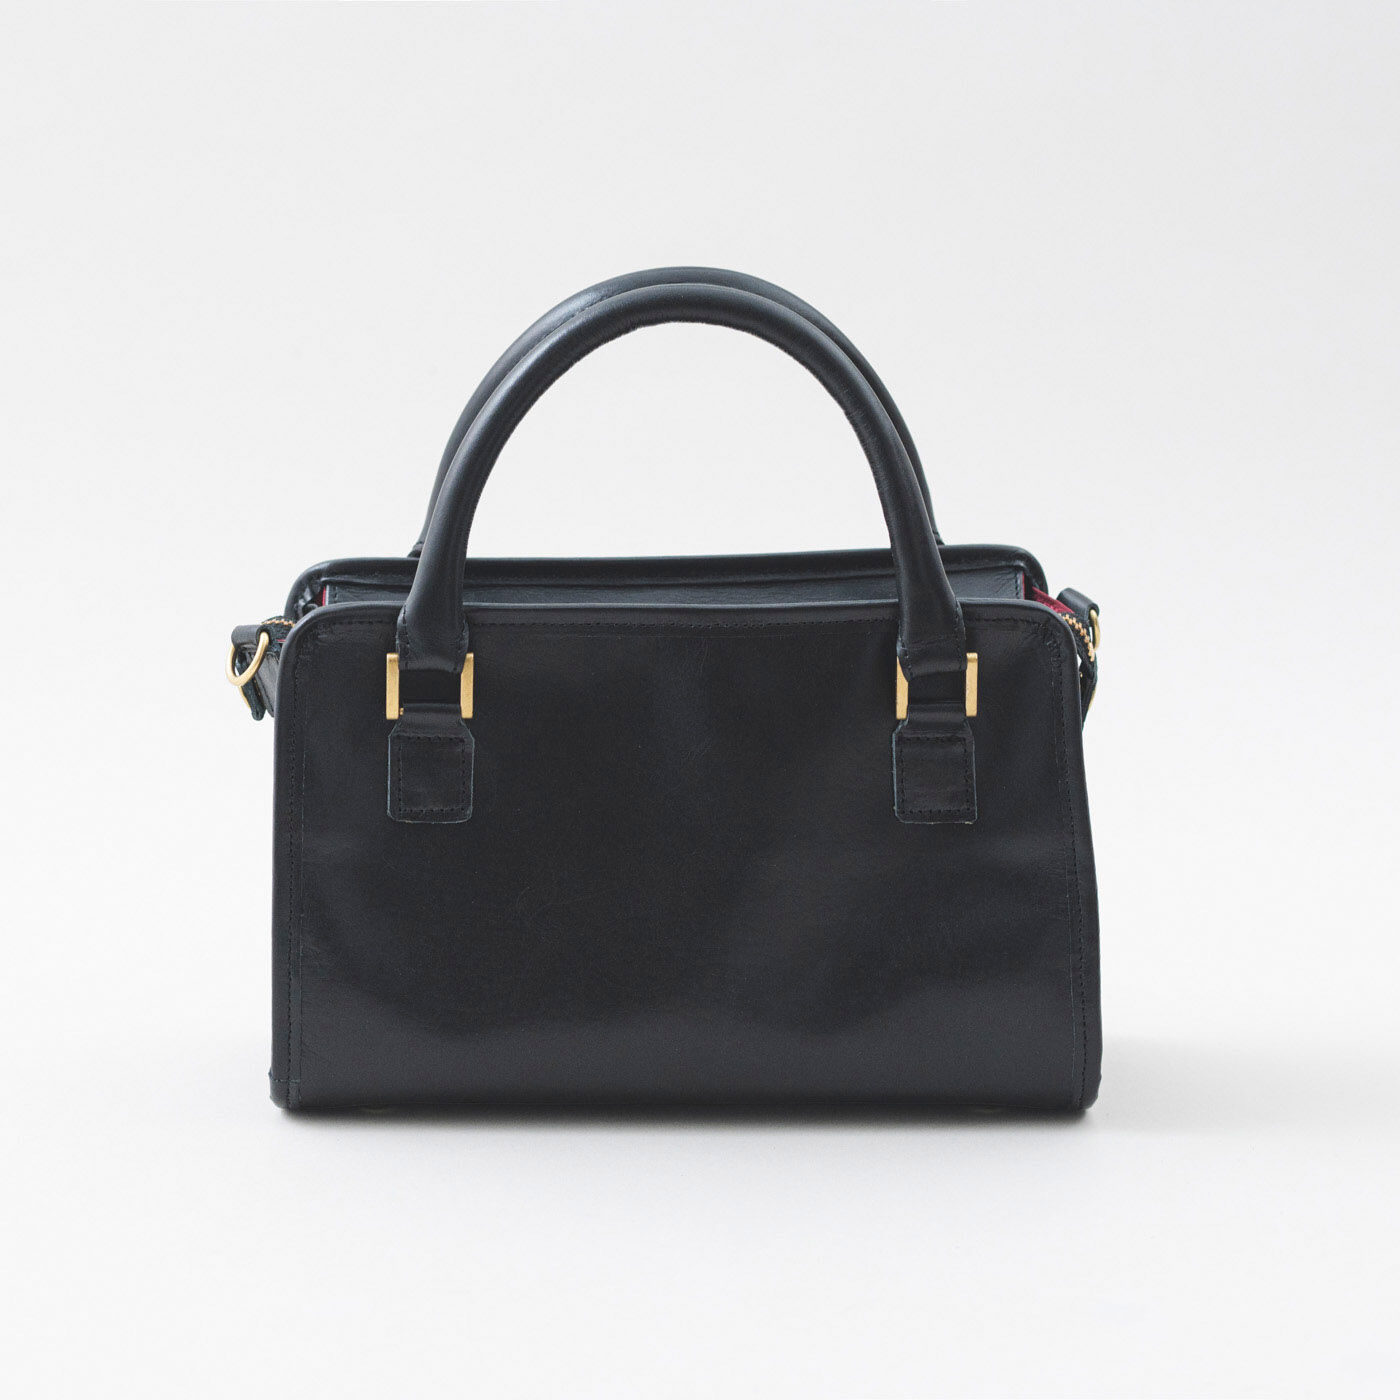 ＆Stories|鞄職人と鞄デザイナーが作った 職人本革のグラーヴェバッグ〈ブラック〉|金具だけをアクセントにした、スタイリッシュなデザインです。